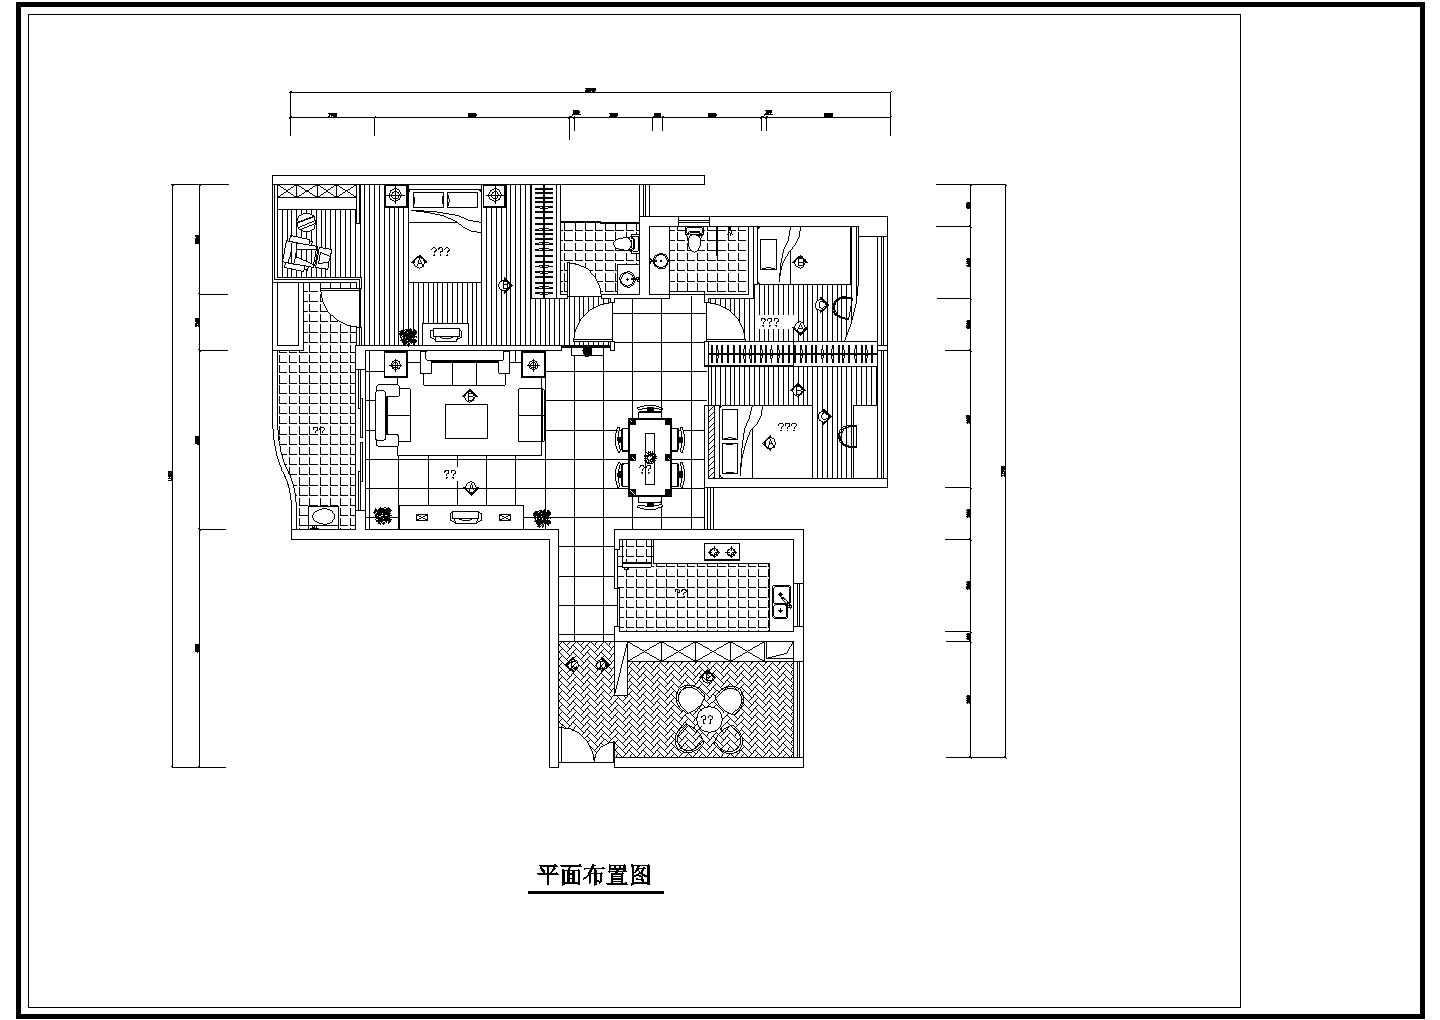 【苏州】某多层住宅全套室内装修设计cad图(含电路控制图，平面布置图)